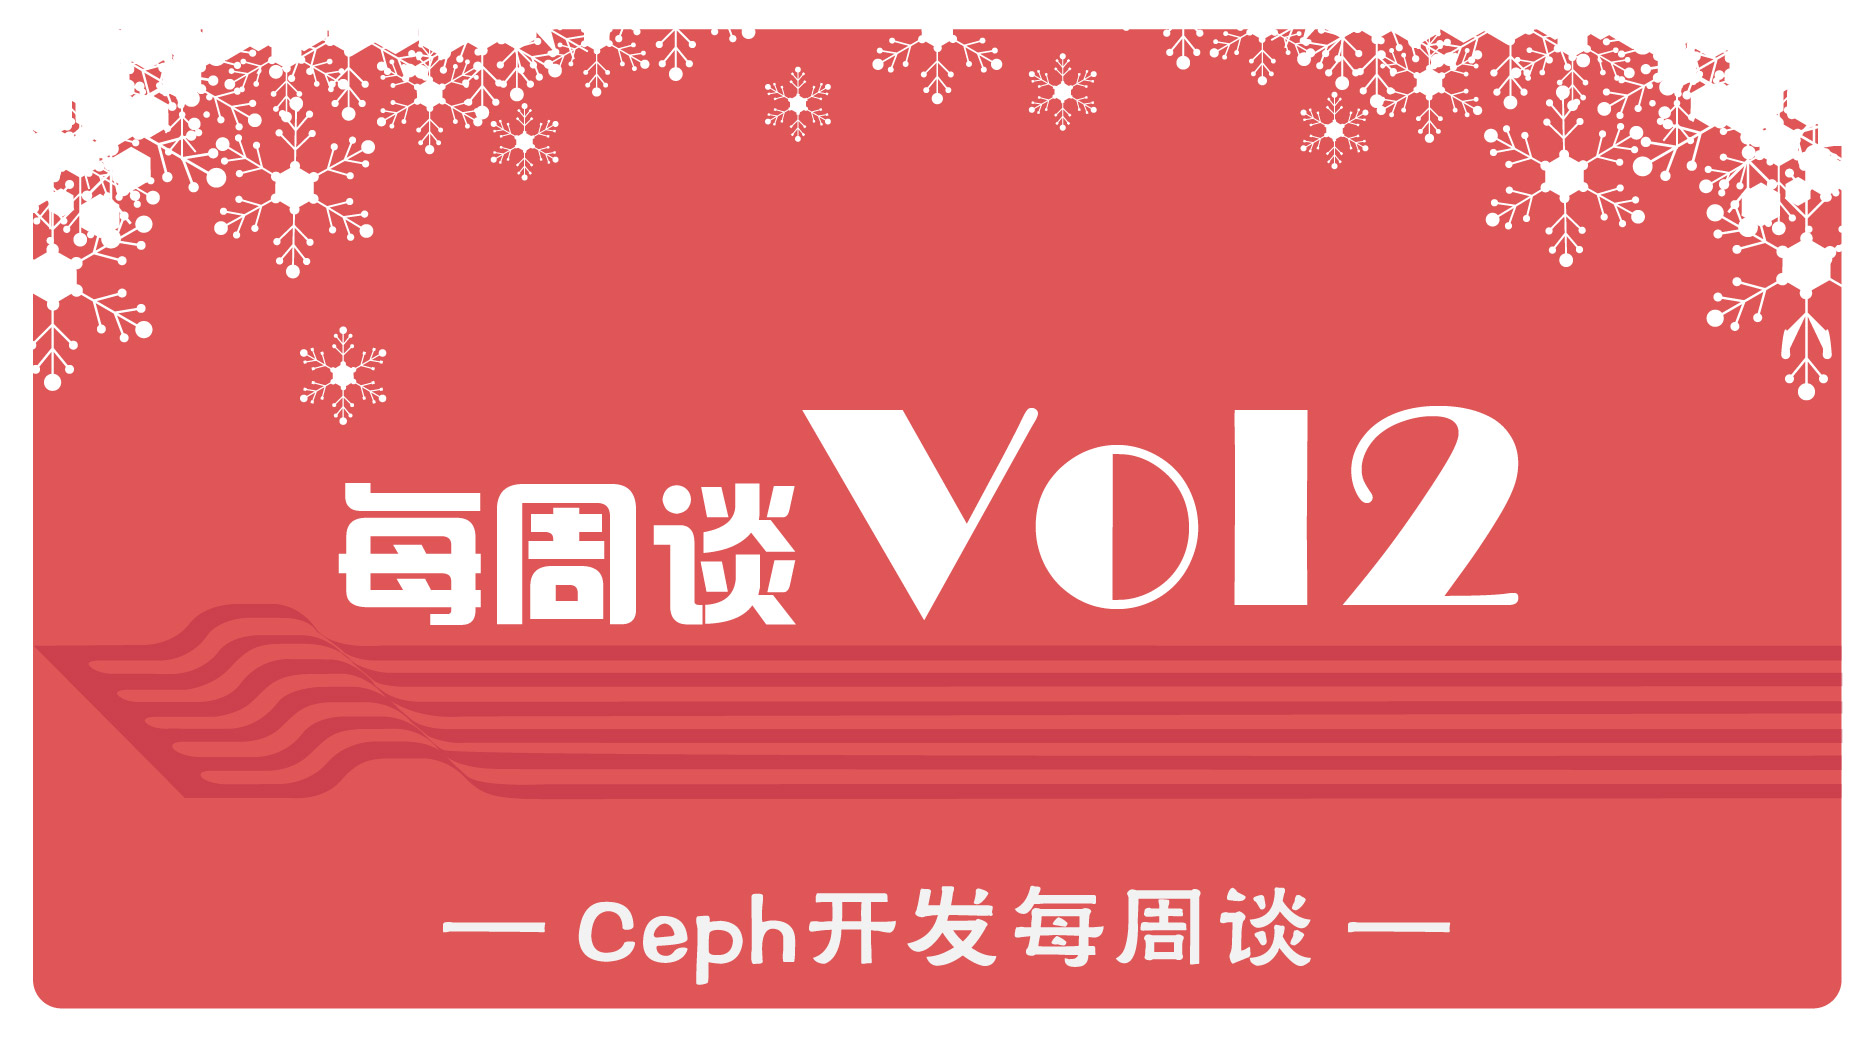 Ceph开发每周谈Vol2